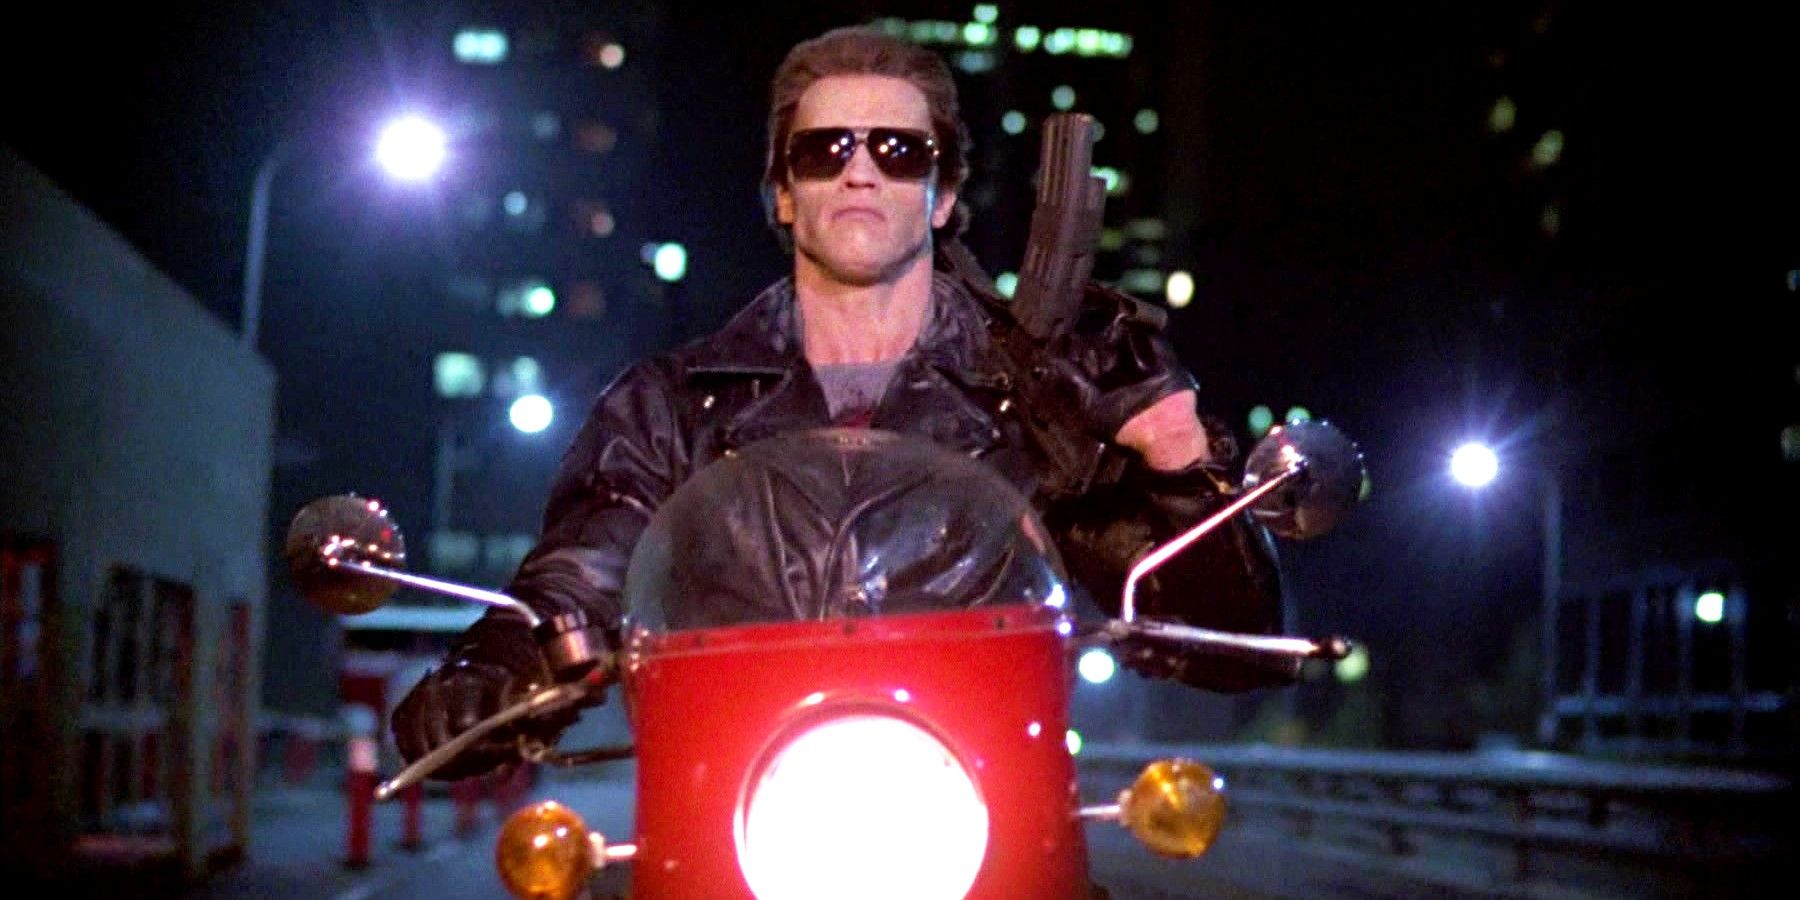 Arnold Schwarzenegger riding a motorcycle in The Terminator